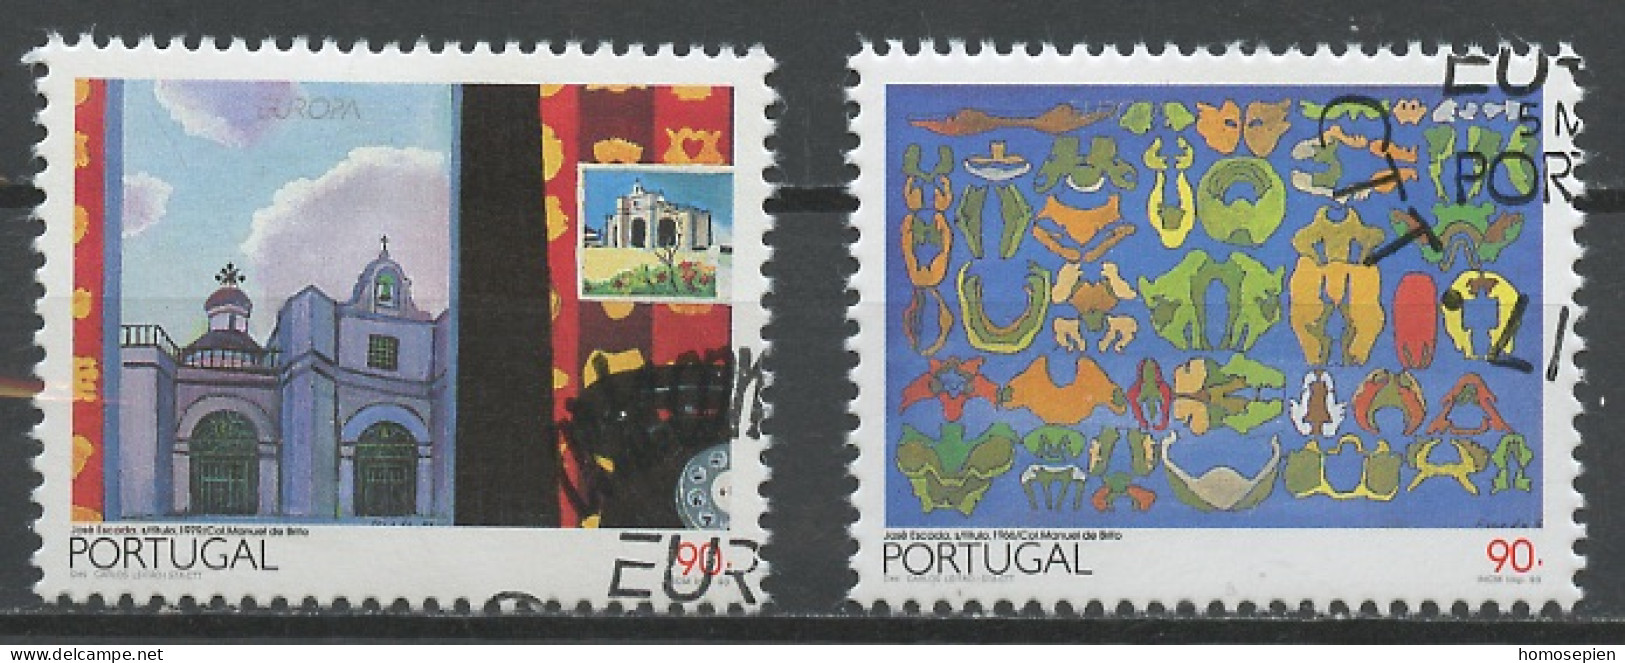 Portugal 1993 Y&T N°1937 à 1938 - Michel N°1959 à 1960 (o) - EUROPA - Oblitérés